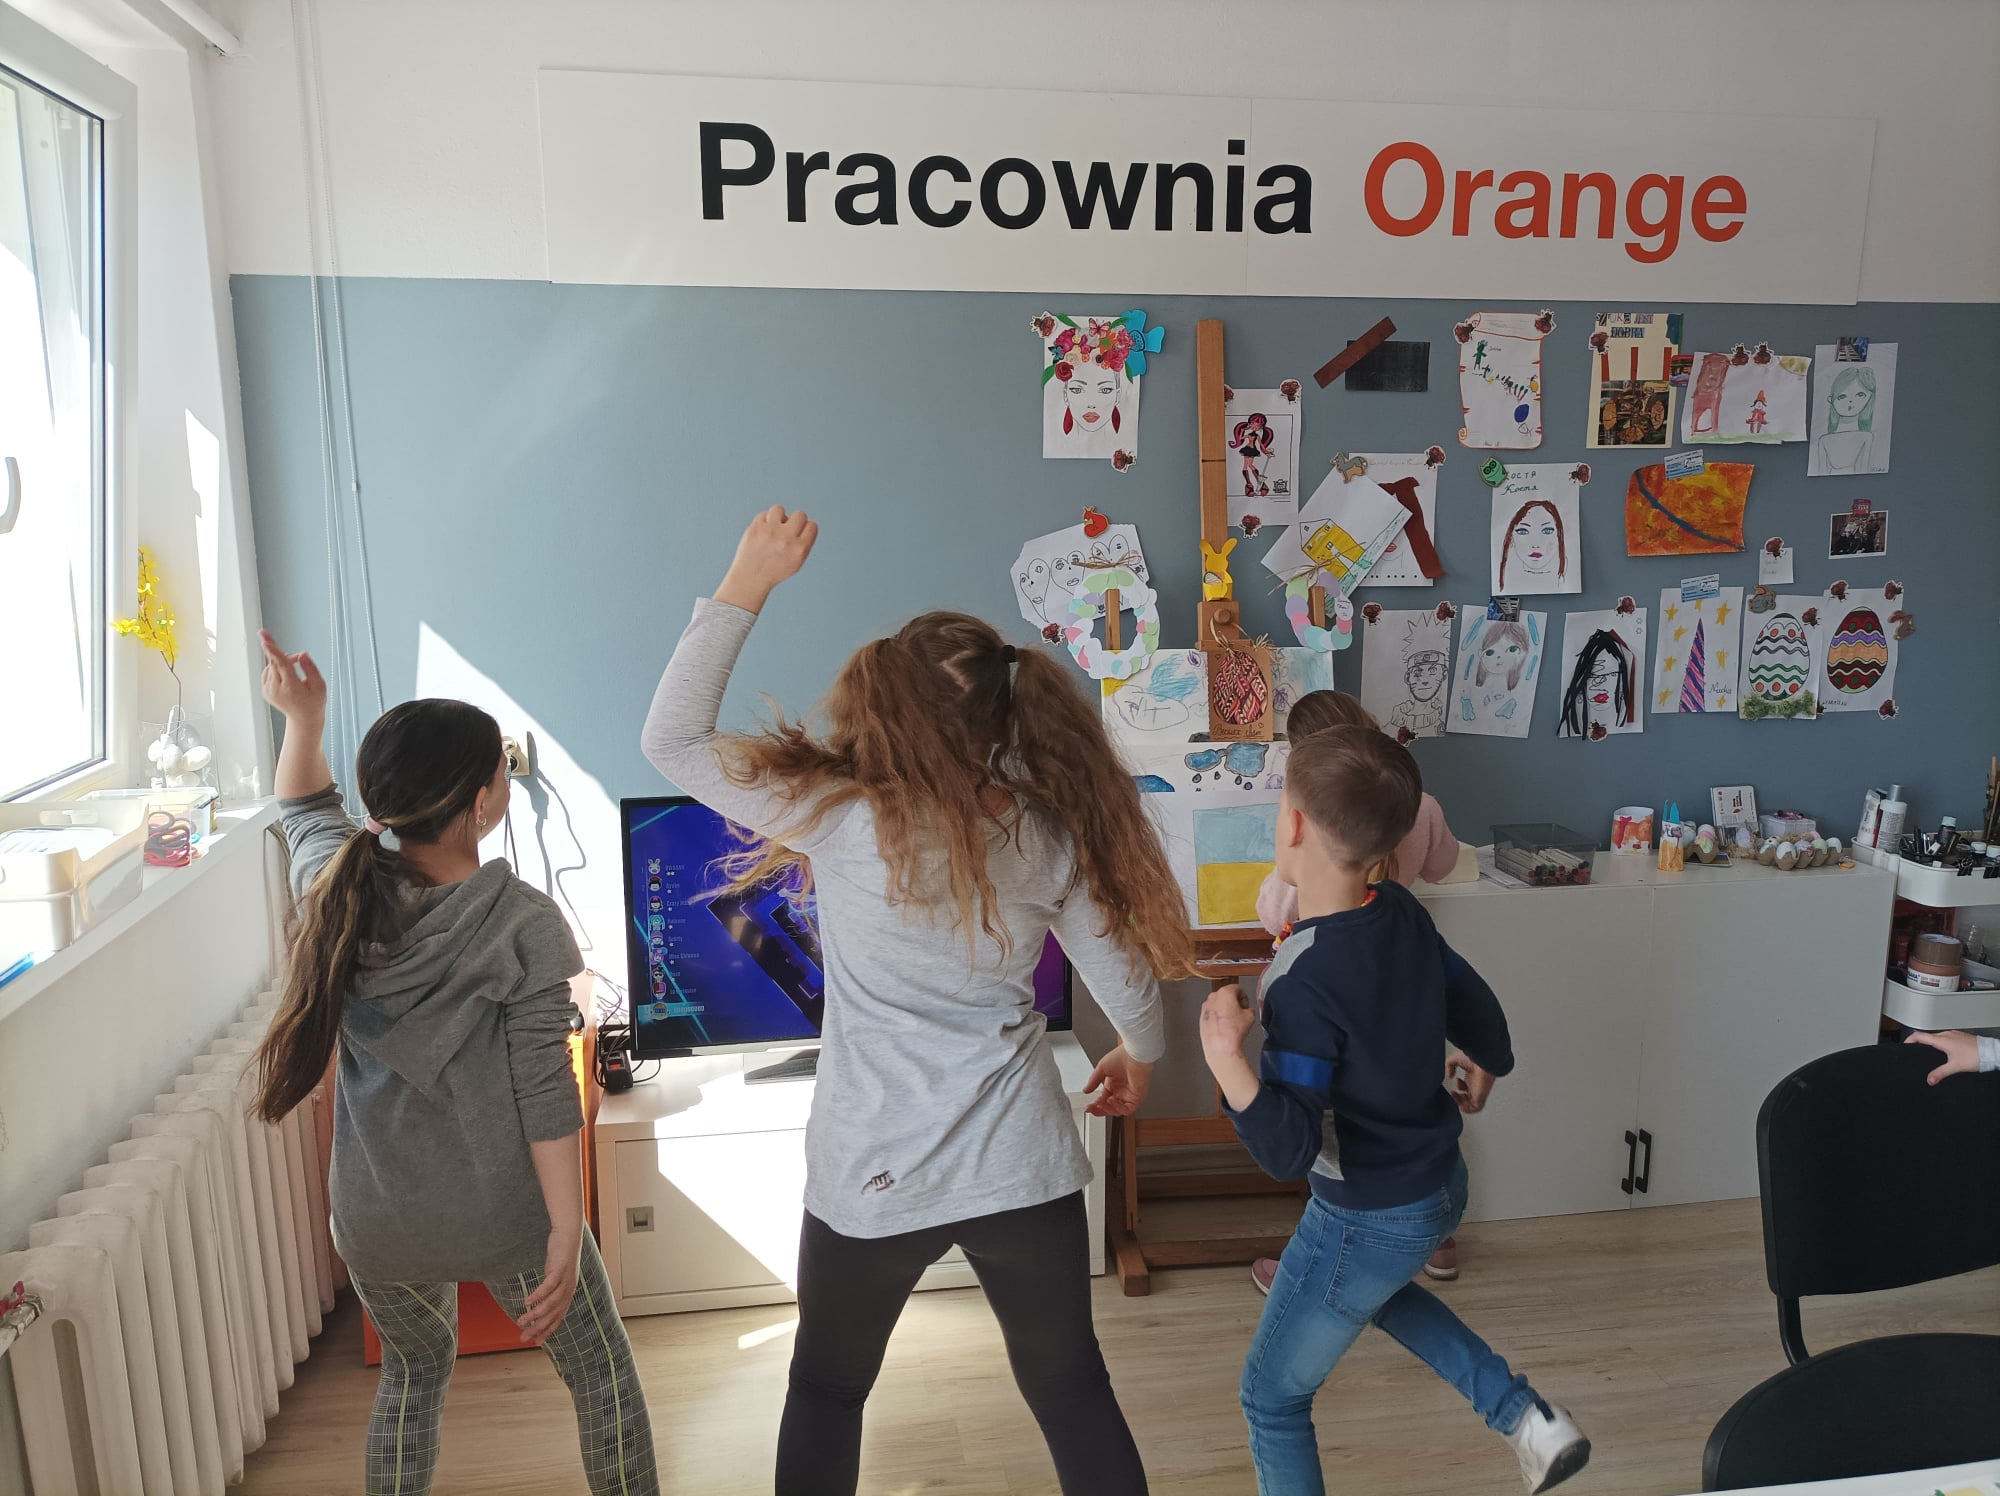 dzieci tańczą w pracowni Orange